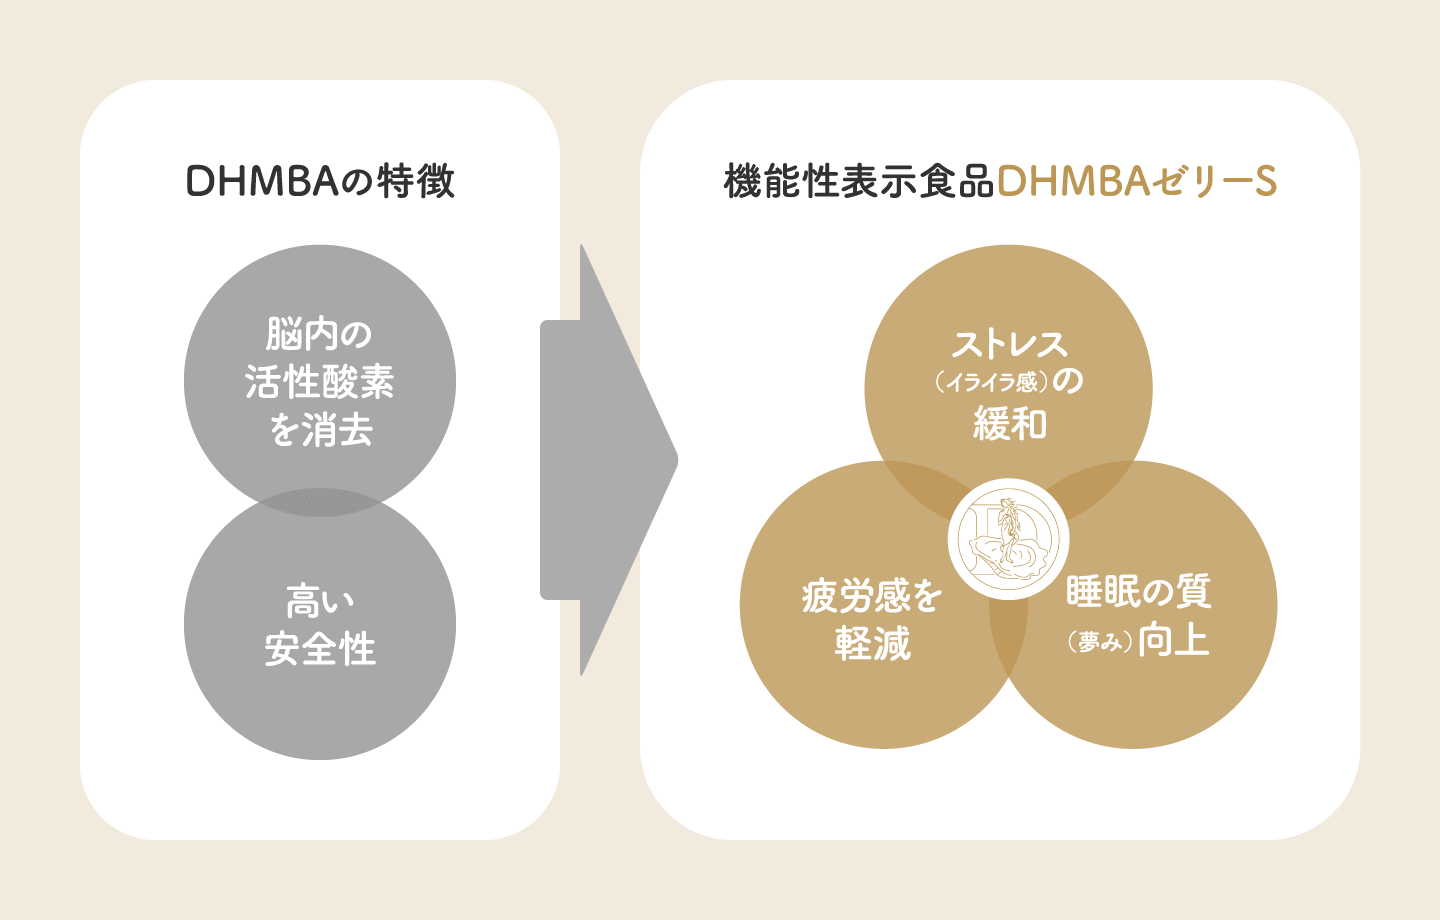 DHMBAの４つの特徴を表した図